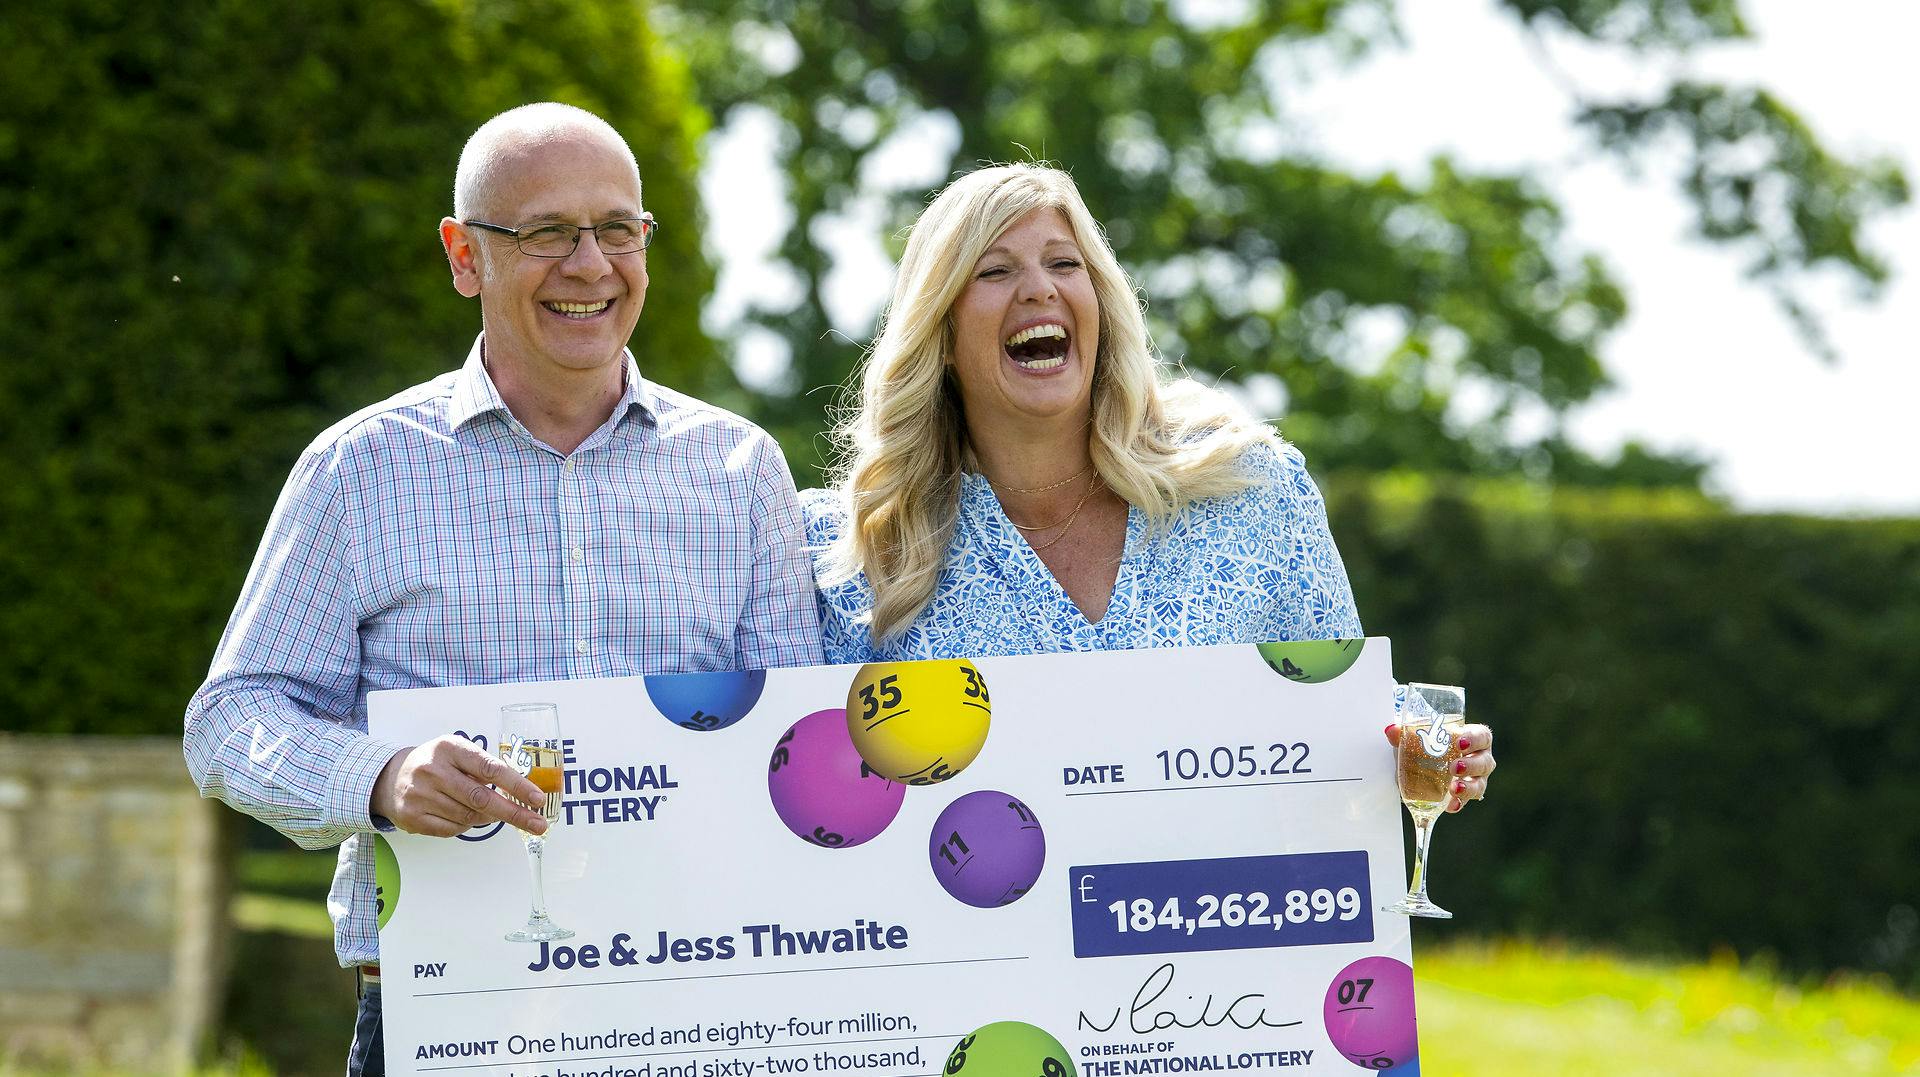 Sådan ser man ud, når lottokuponen udløser over 1,5 milliarder kroner. Det gjorde den i maj i år for det britiske ægtepar Joe og Jess Thwaite.